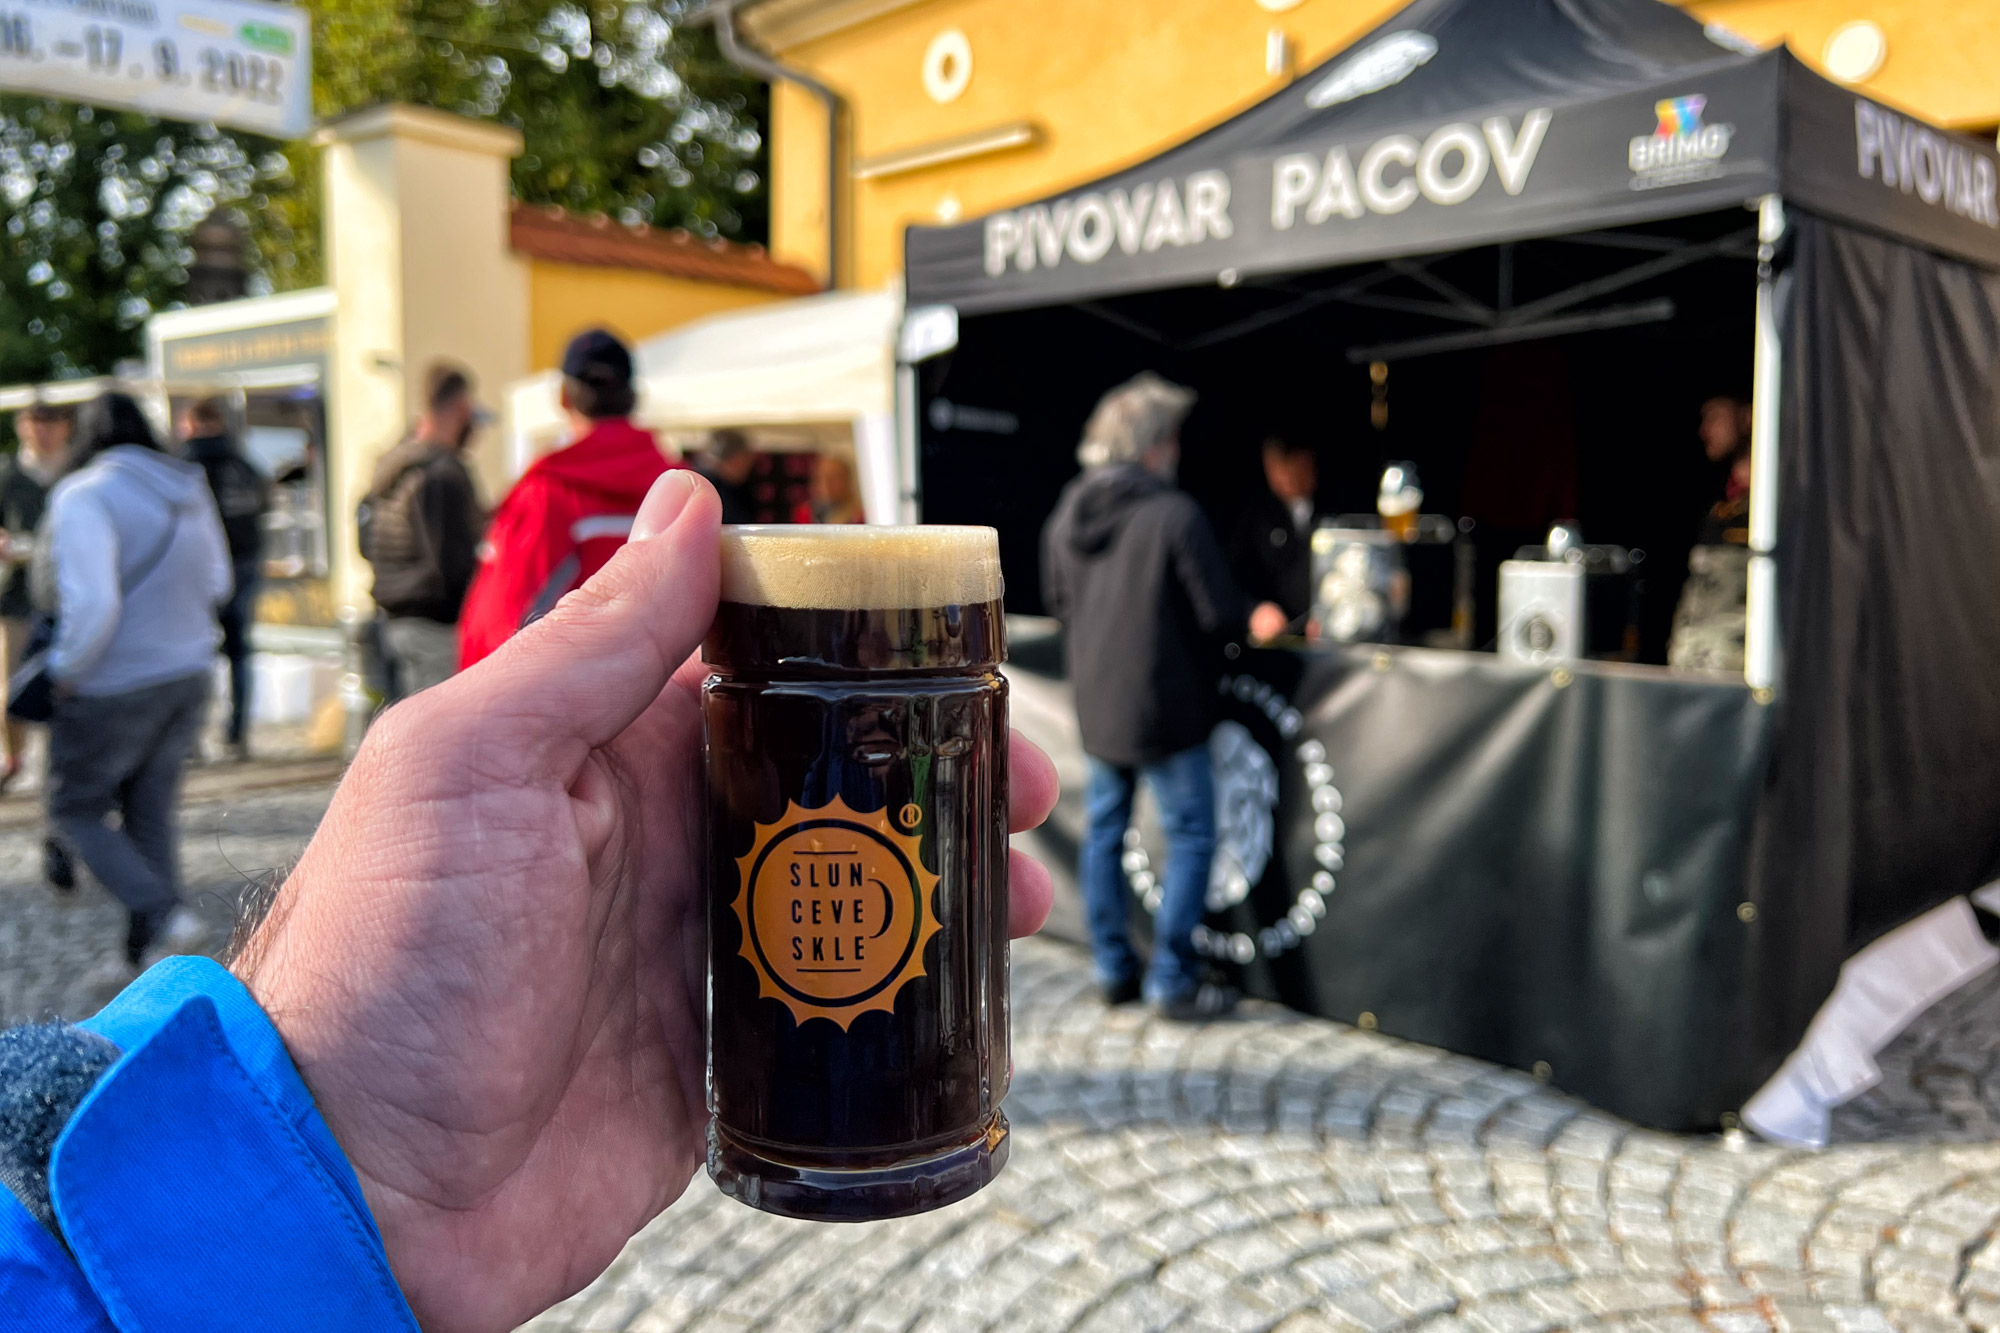 Pilsen, Tsjechië - Sun in the Glass bierfestival